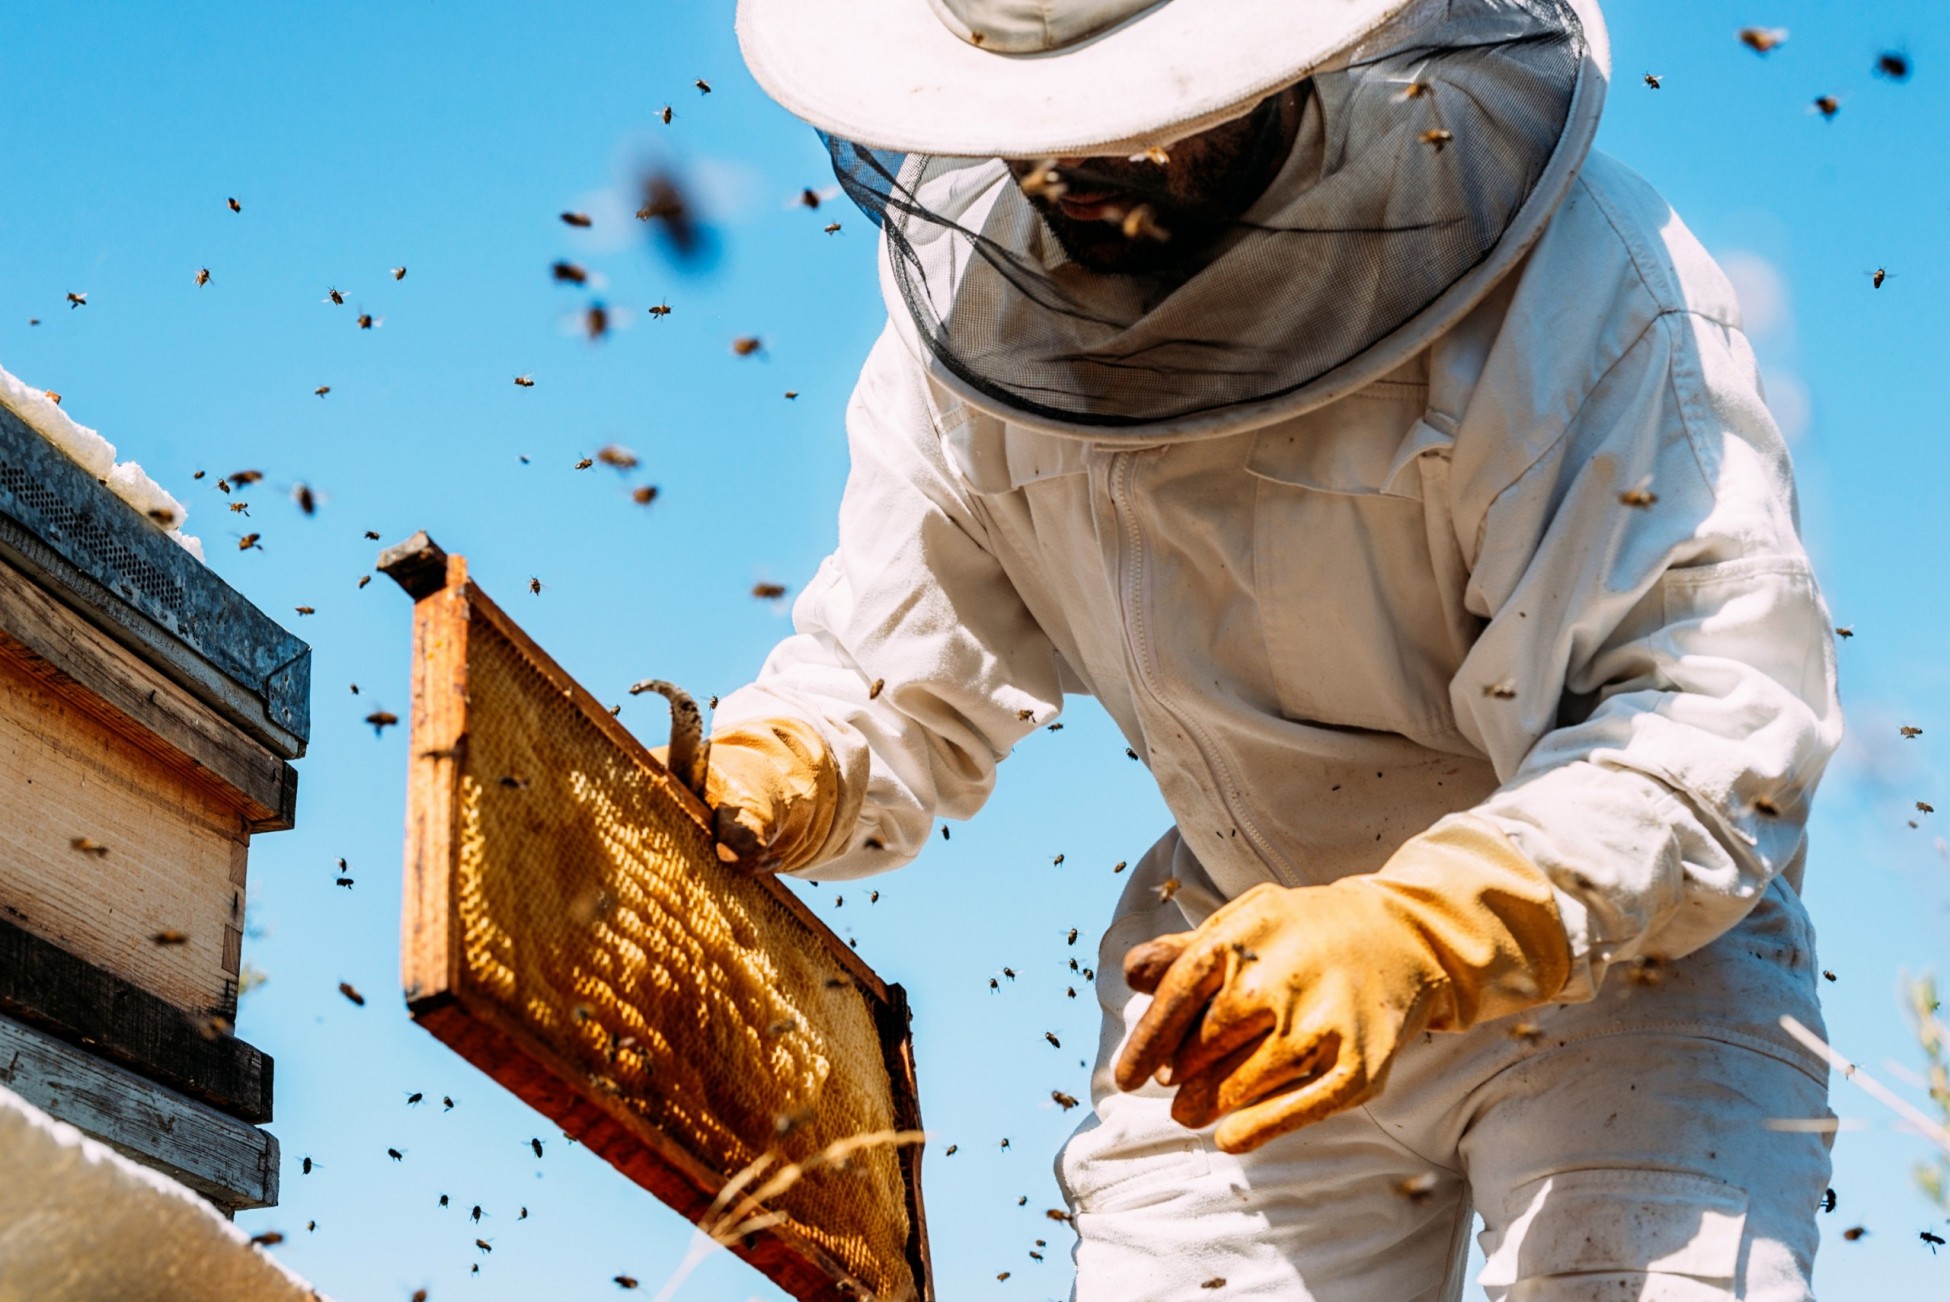 Τράπεζα Πειραιώς και Αττική Μελισσοκομική ενισχύουν τους επαγγελματίες παραγωγούς μελιού της Β. Εύβοιας